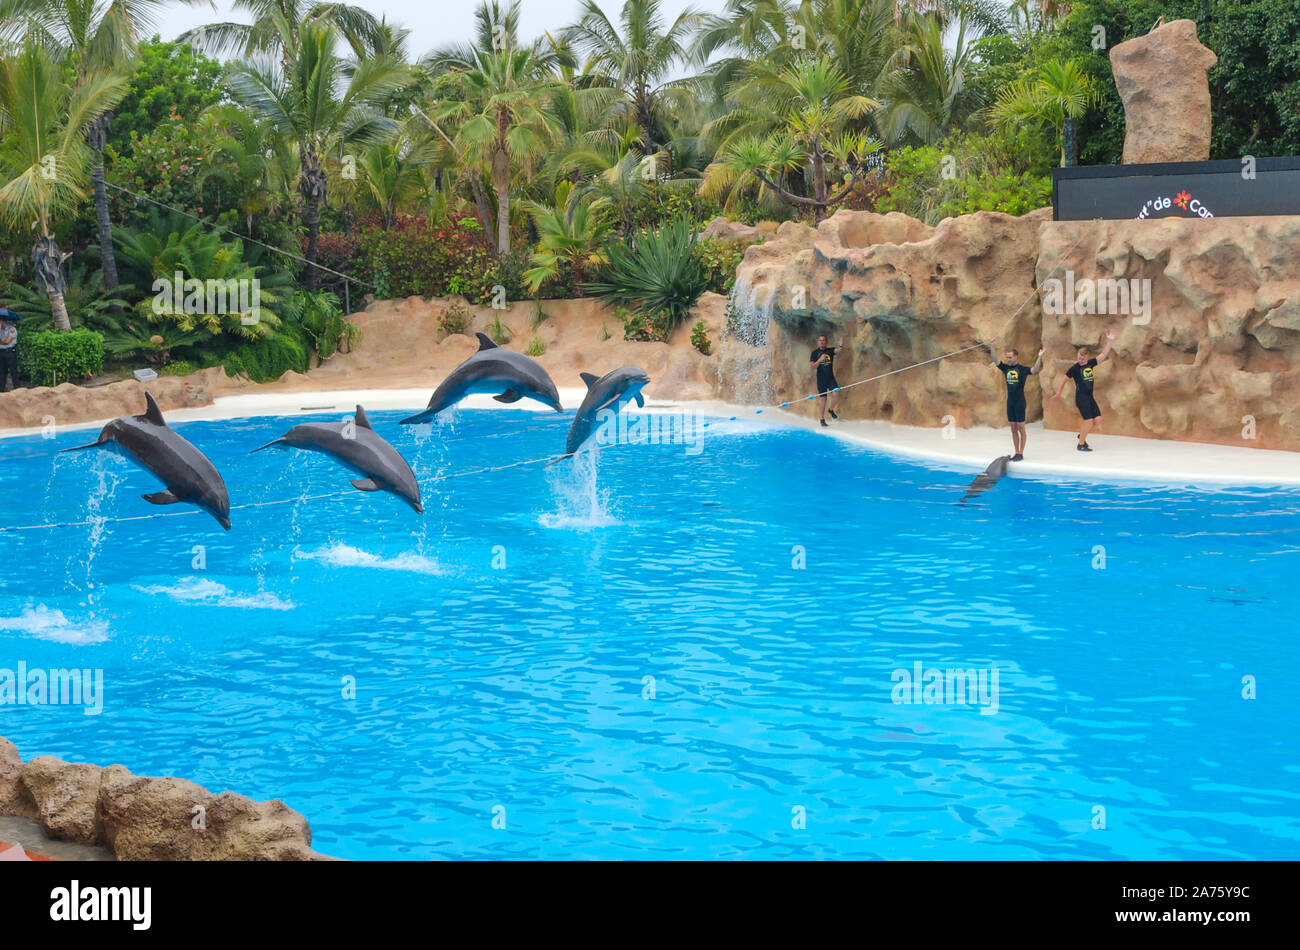 Puerto de la Cruz, Tenerife,Spain - JUNE 29, 2018: Loro Parque dolphin ...